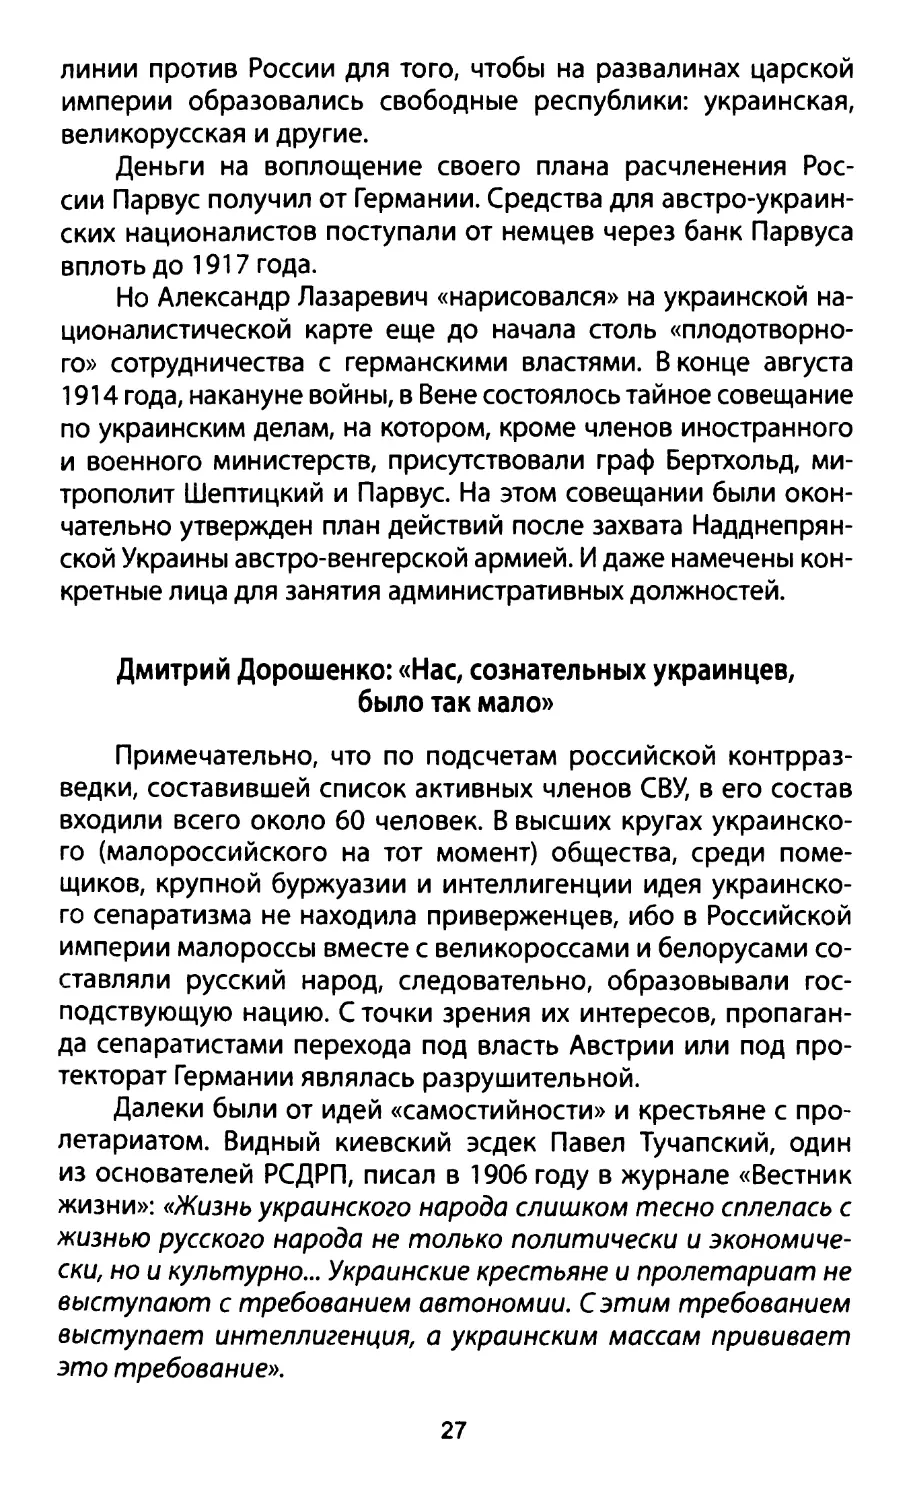 Дмитрий Дорошенко: «Нас, сознательных украинцев, было так мало»